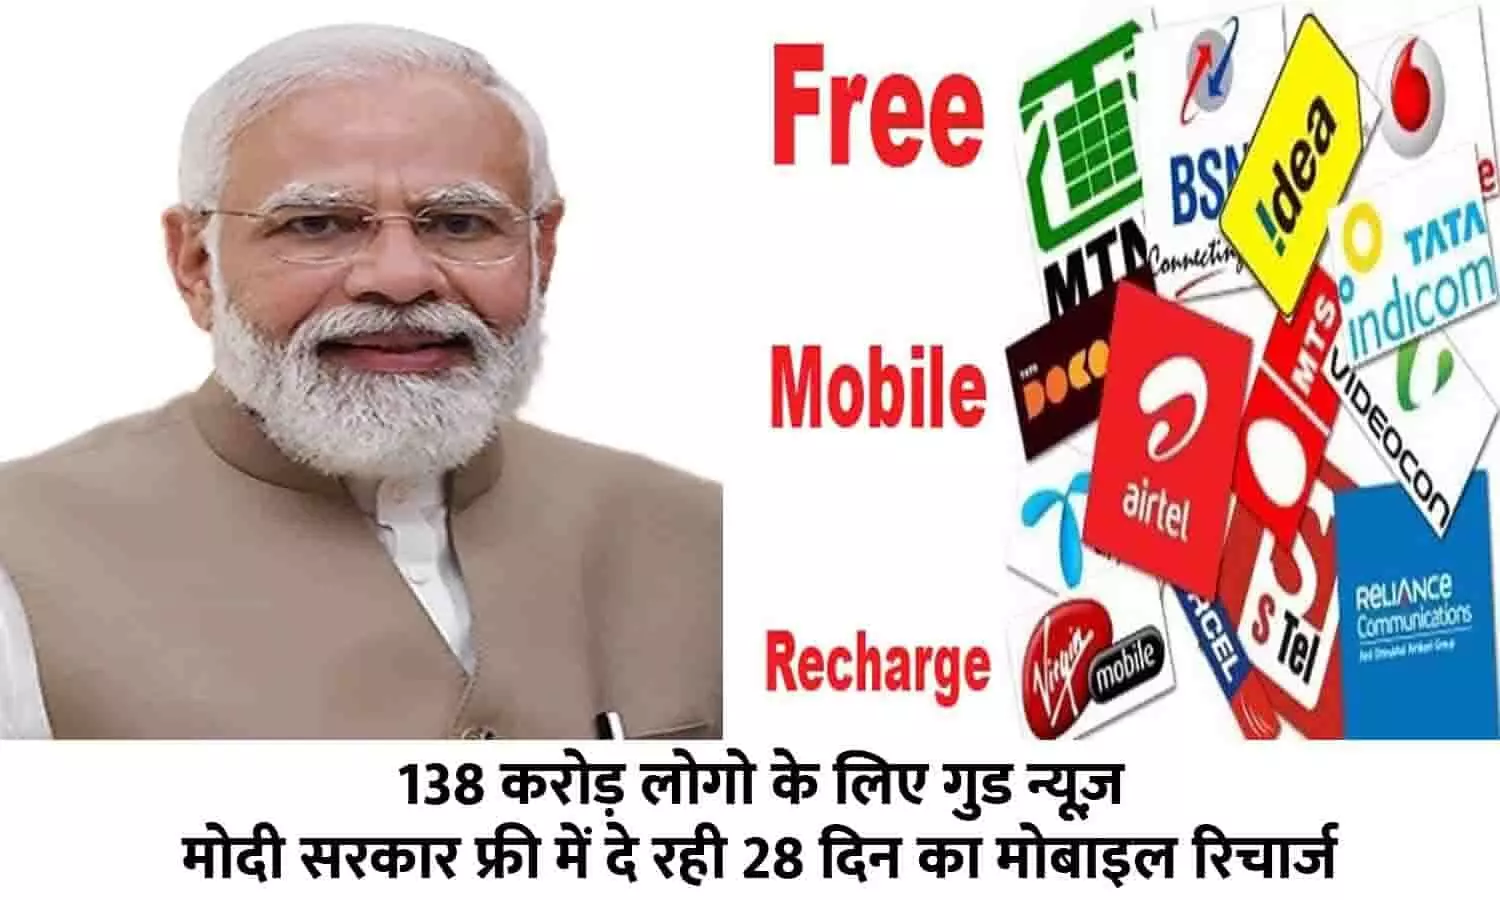 Free Mobile Recharge Scheme In Hindi 2023: 138 करोड़ लोगो के लिए गुड न्यूज़! मोदी सरकार फ्री में दे रही 28 दिन का मोबाइल रिचार्ज, फटाफट देखे Latest Update